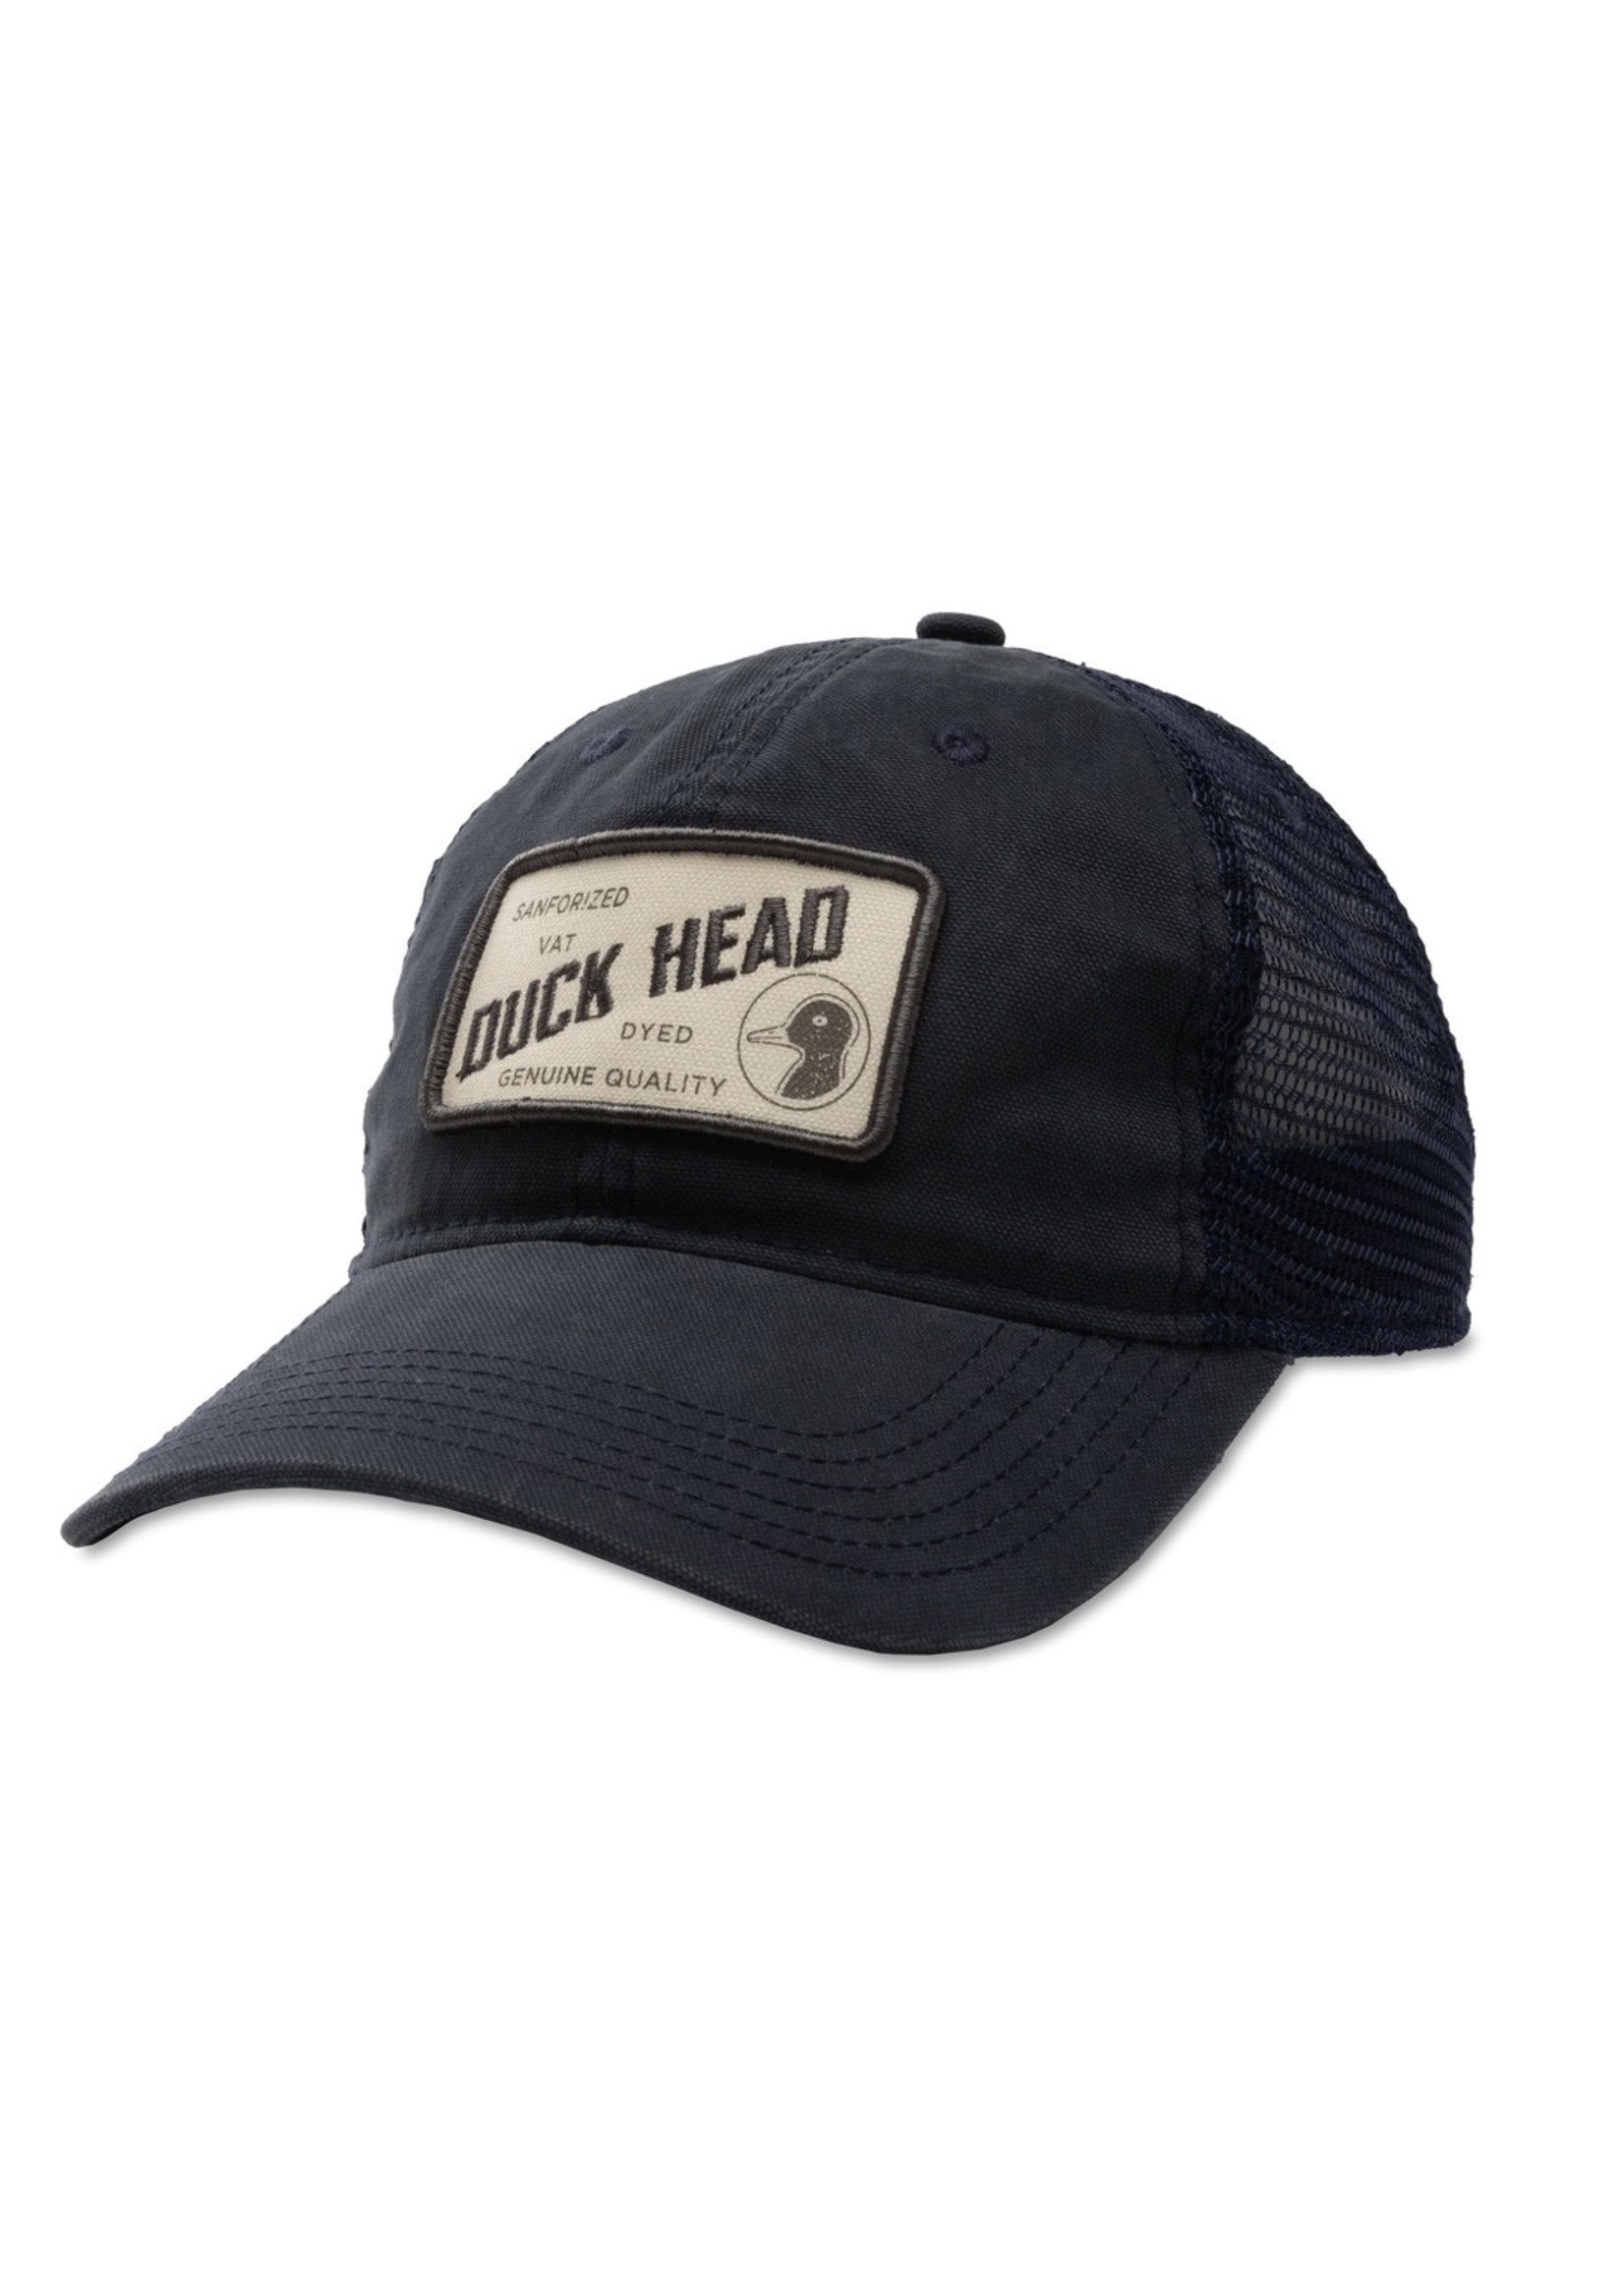 Duck Head Sanforized Trucker Hat Navy/Navy